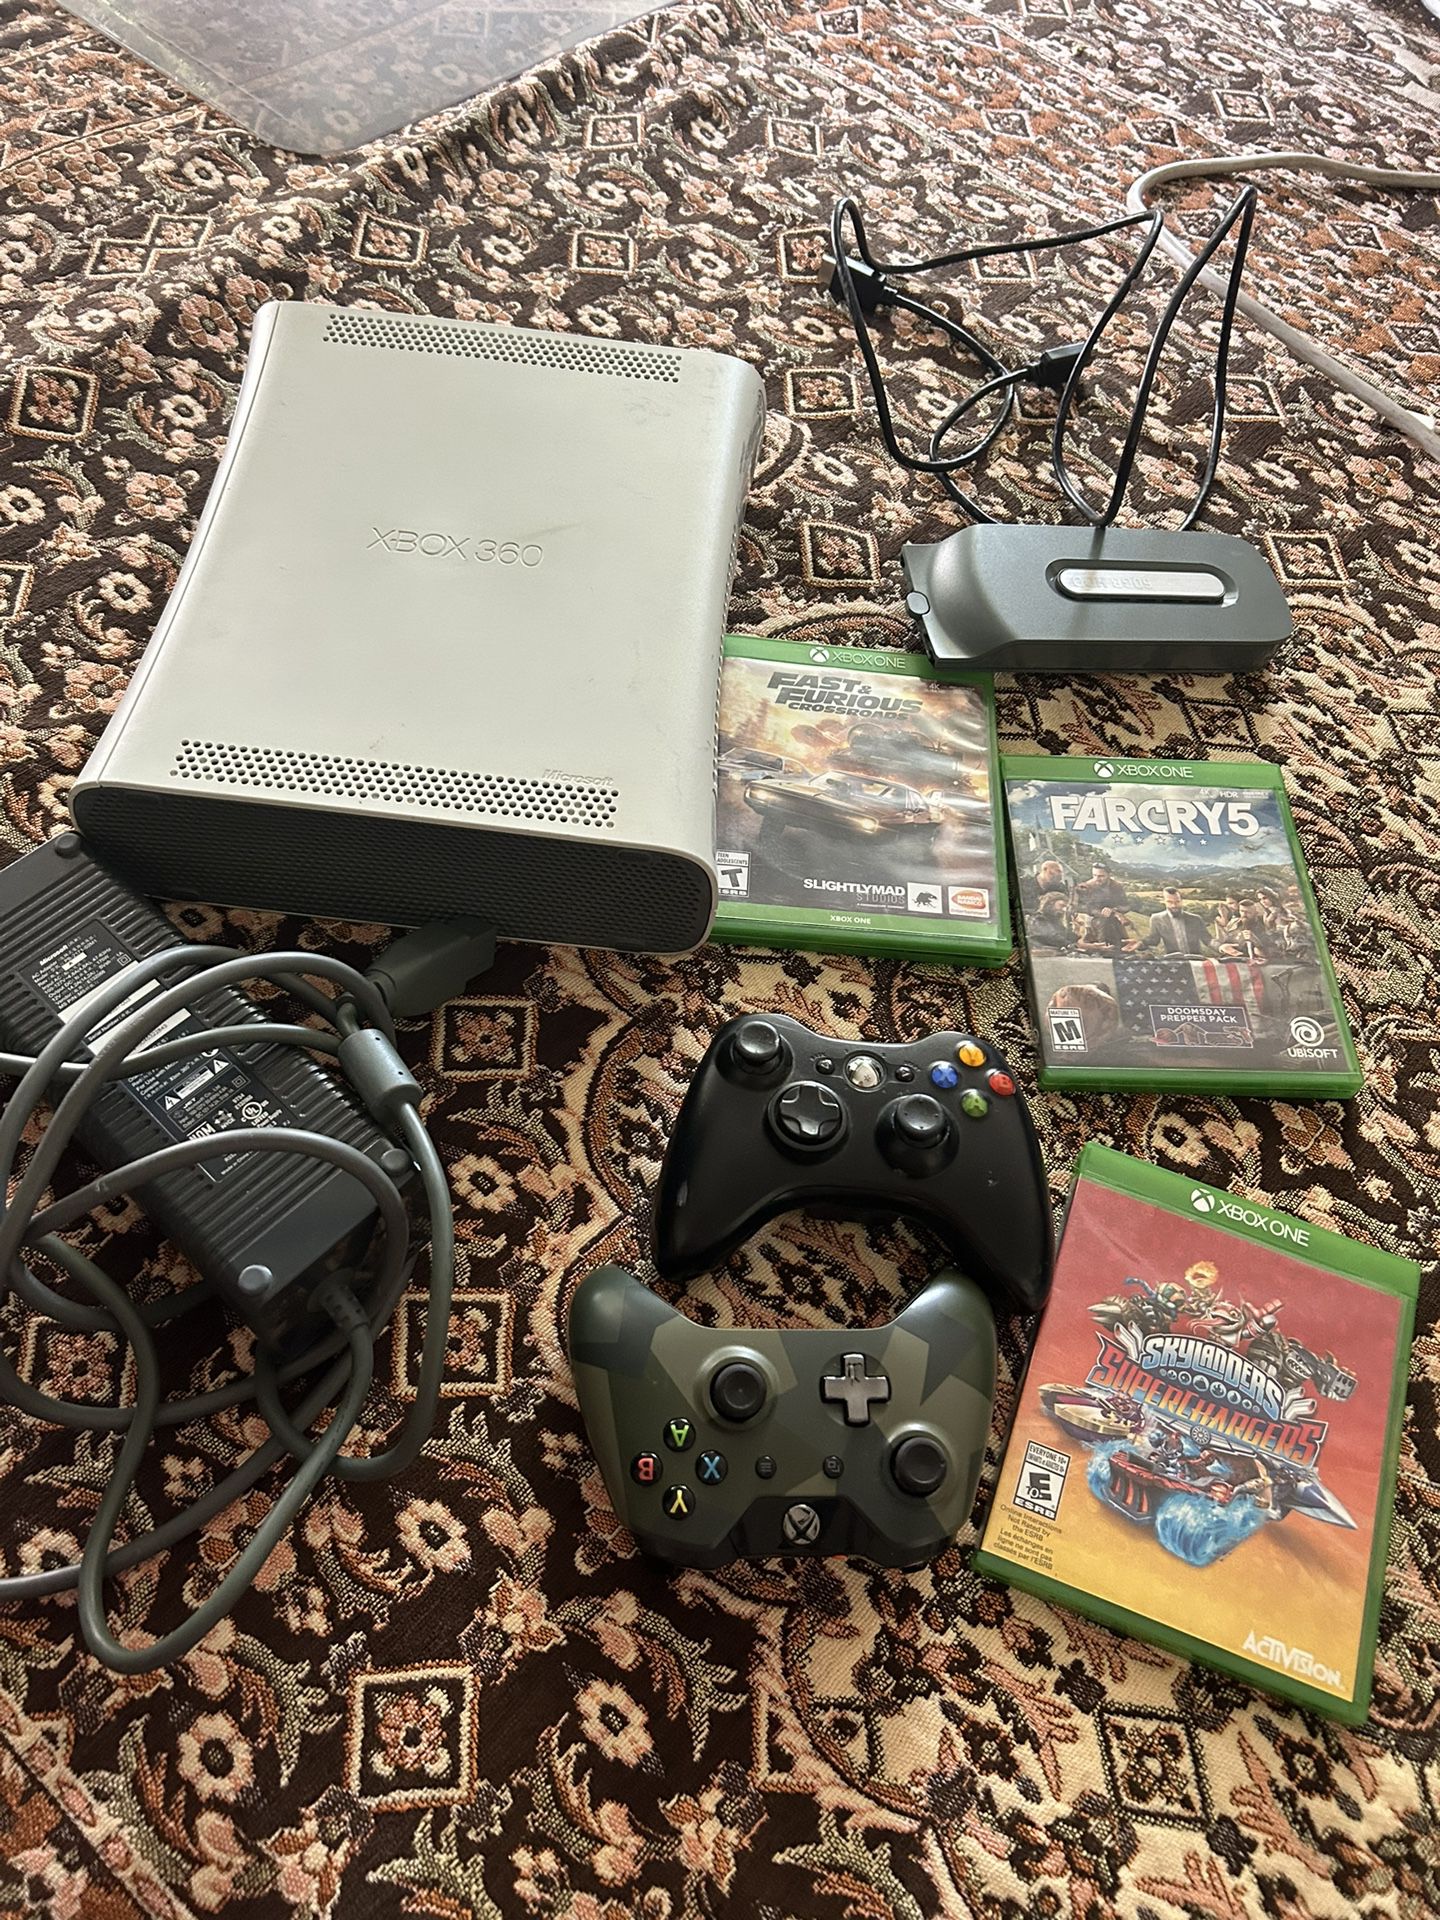 Microsoft Xbox 360 Arcade 120GB Console - White, With Games, See Description